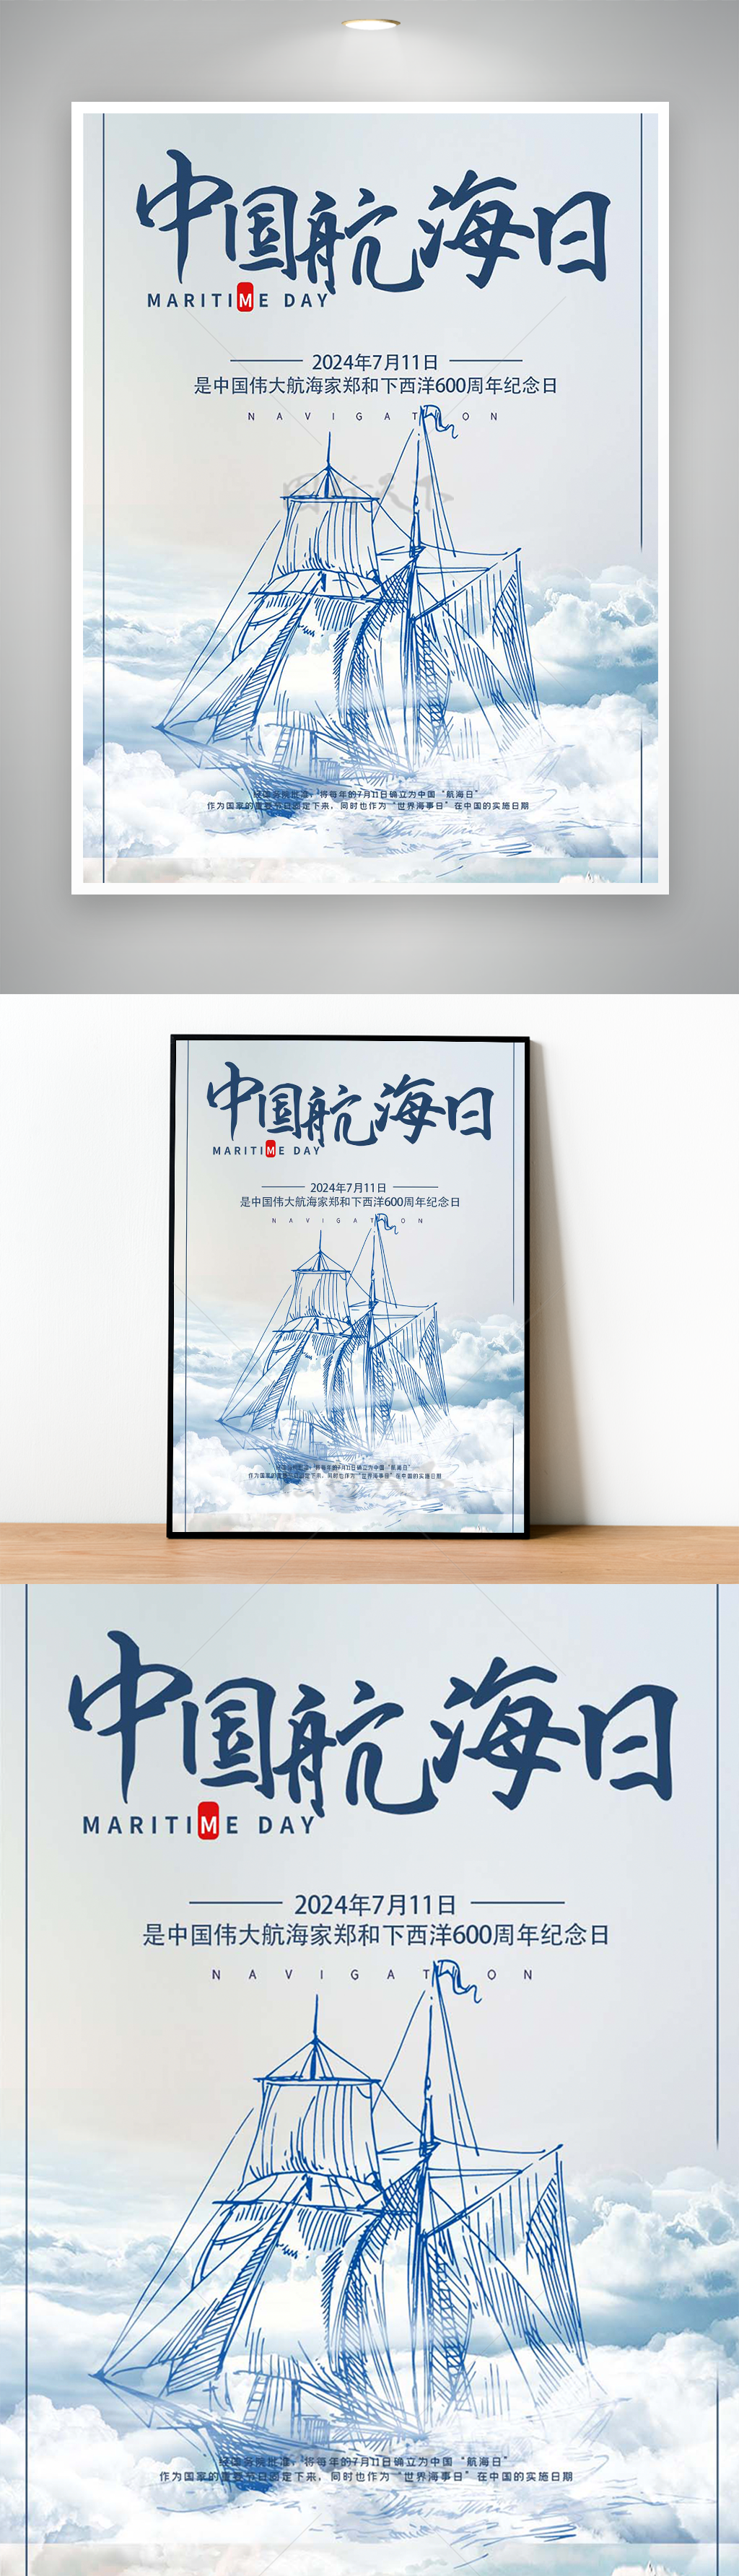 简笔线条扬帆起航中国航海日宣传海报